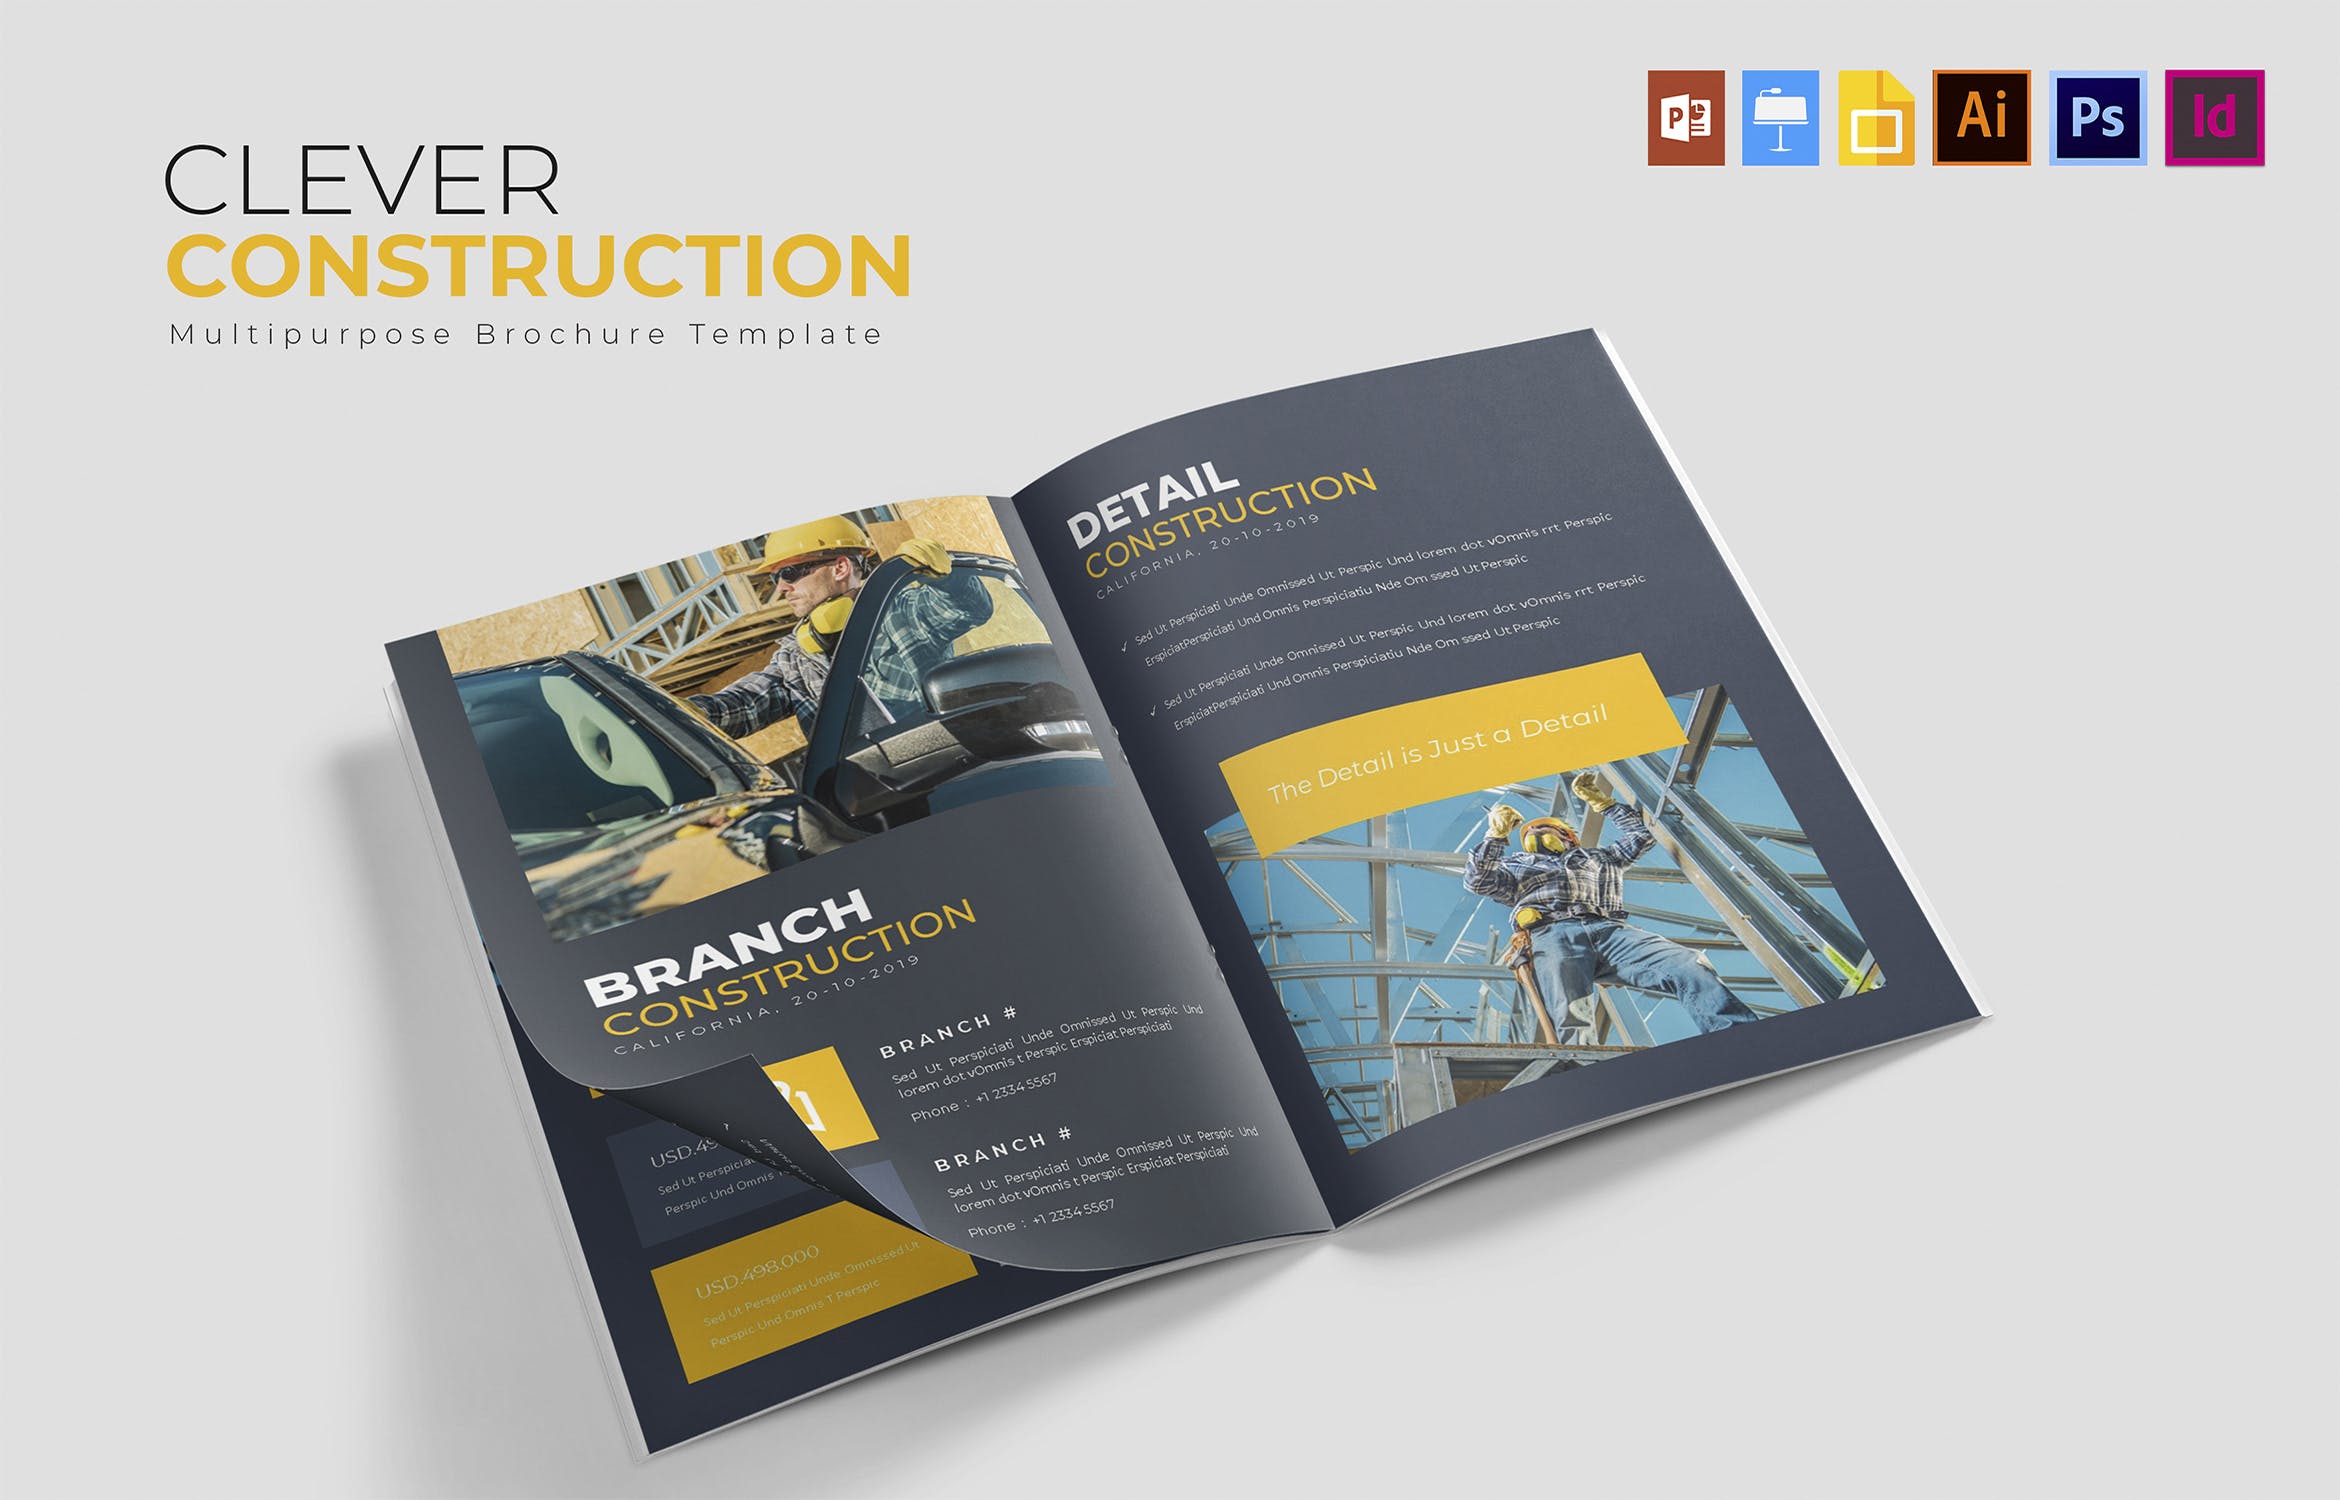 建筑公司/施工企业简介画册设计模板 Clever Construction | Brochure插图(3)